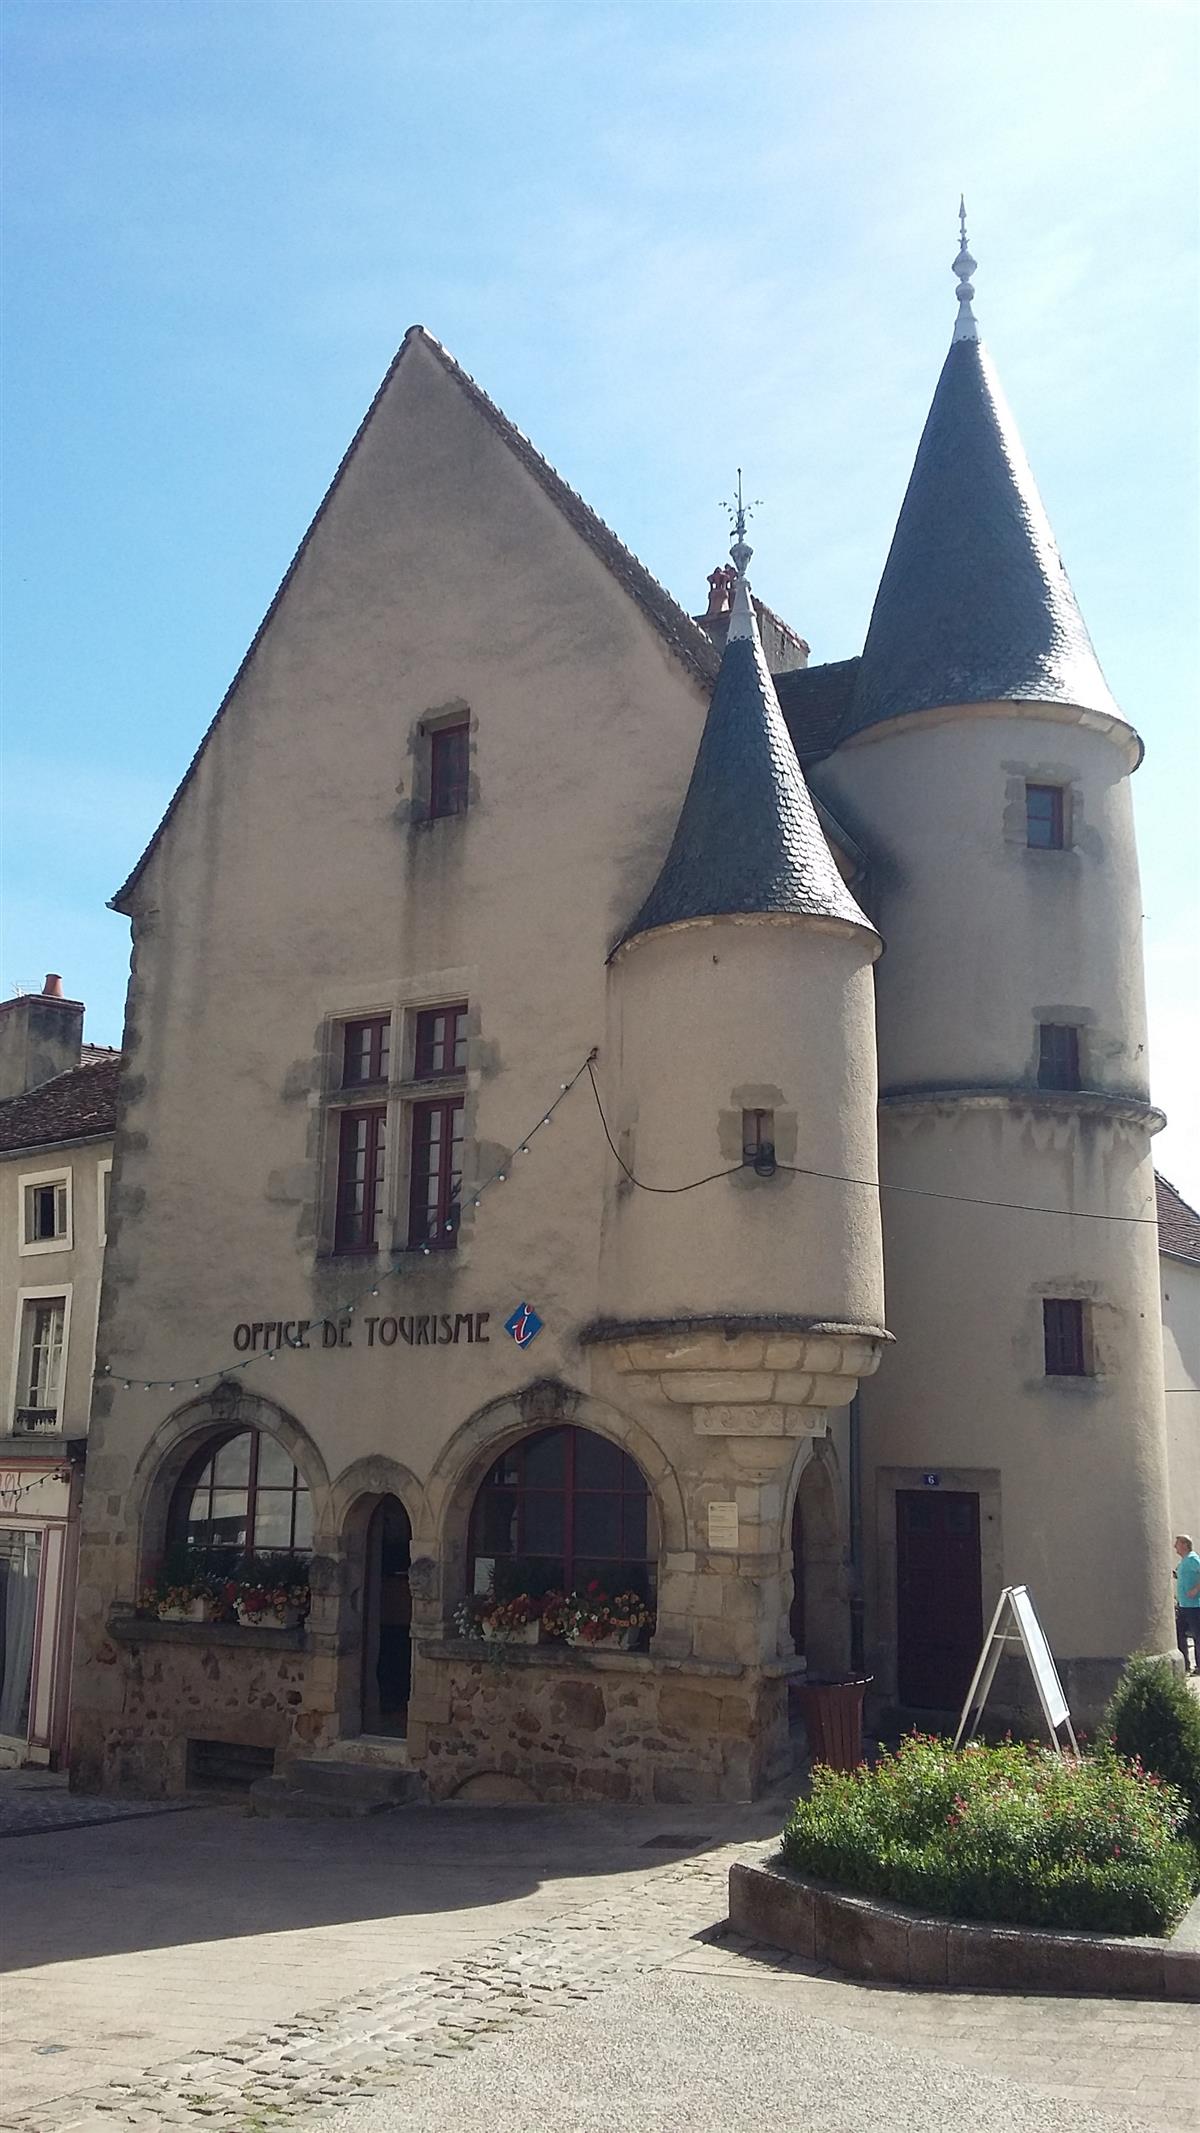 La Maison Bourgogne - Office de Tourisme OT Pays Arnay-Liernais